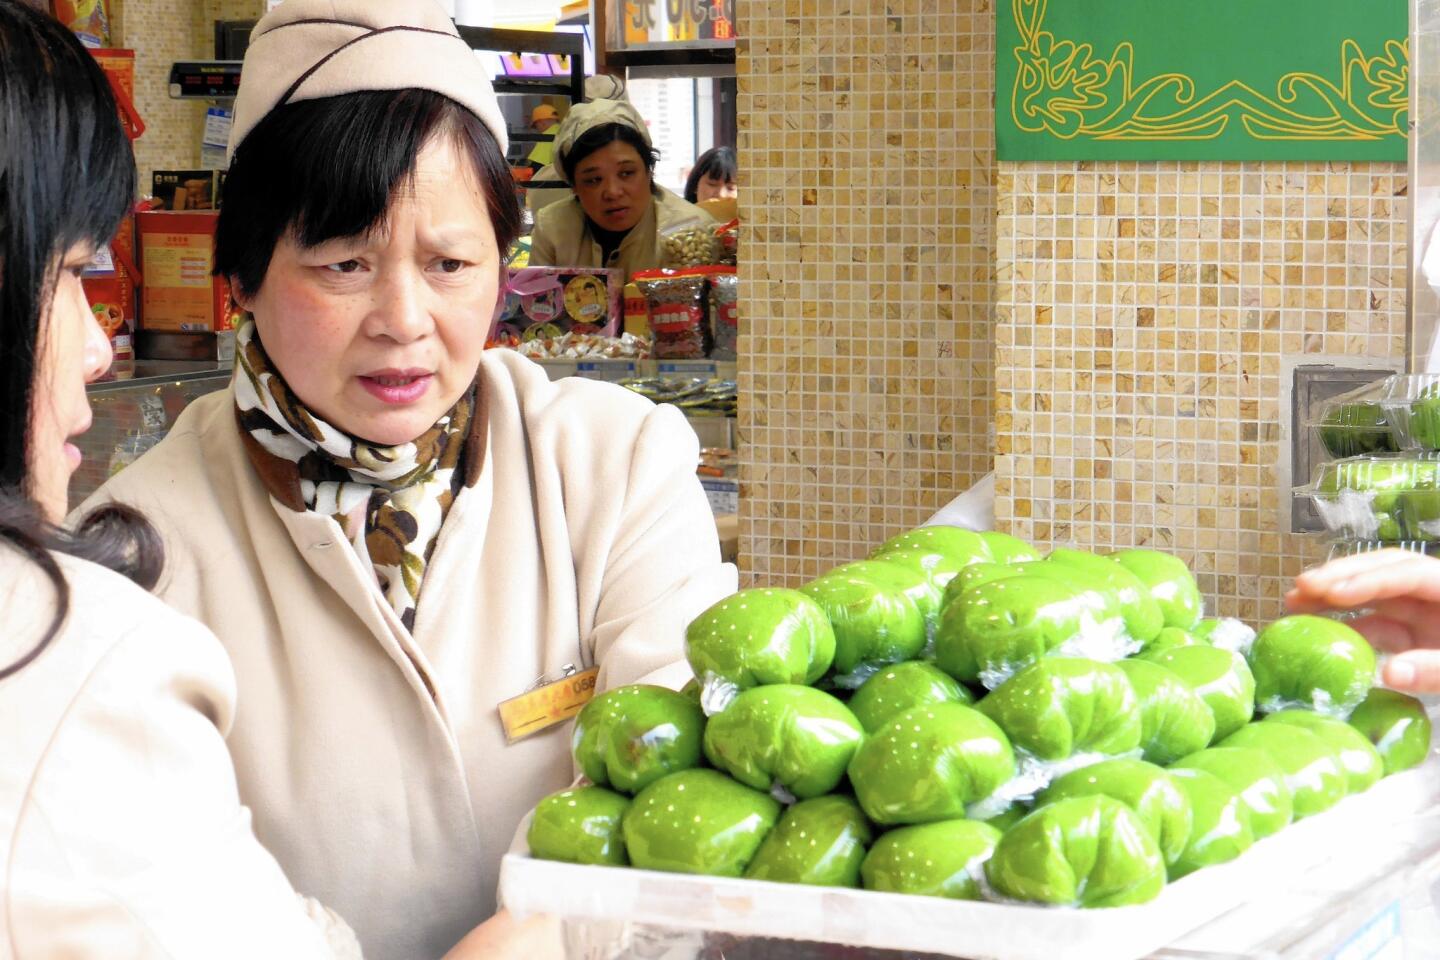 Green dumplings